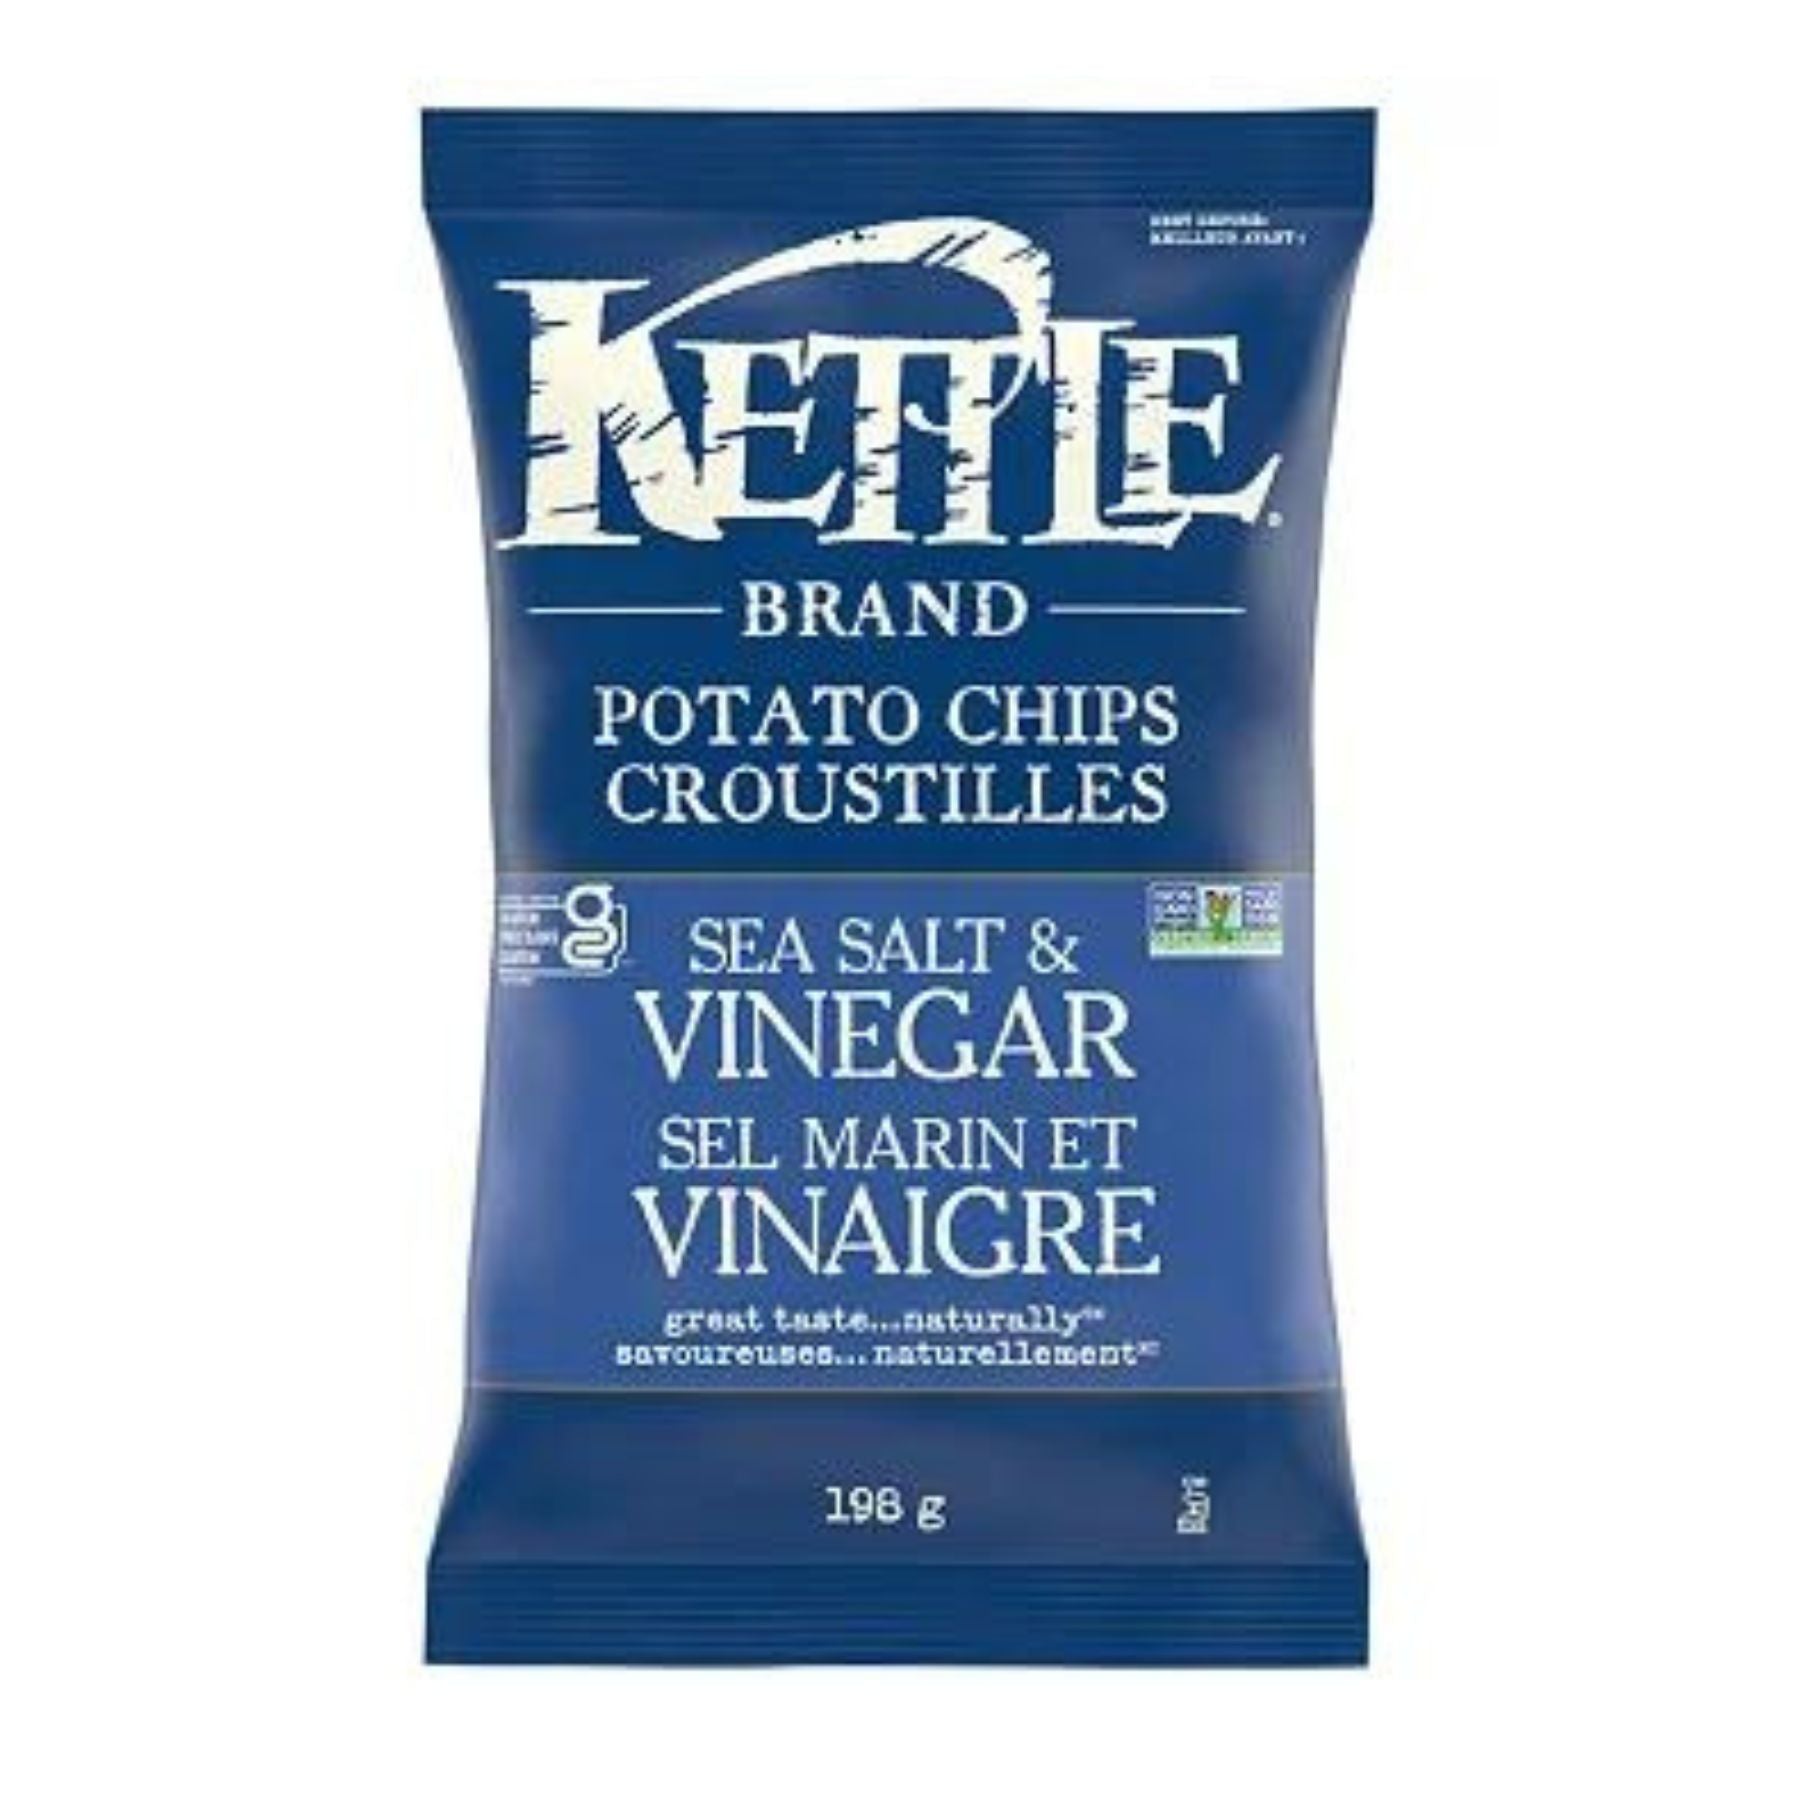 Kettle Potato Chips Sea Salt & Vinegar 198g